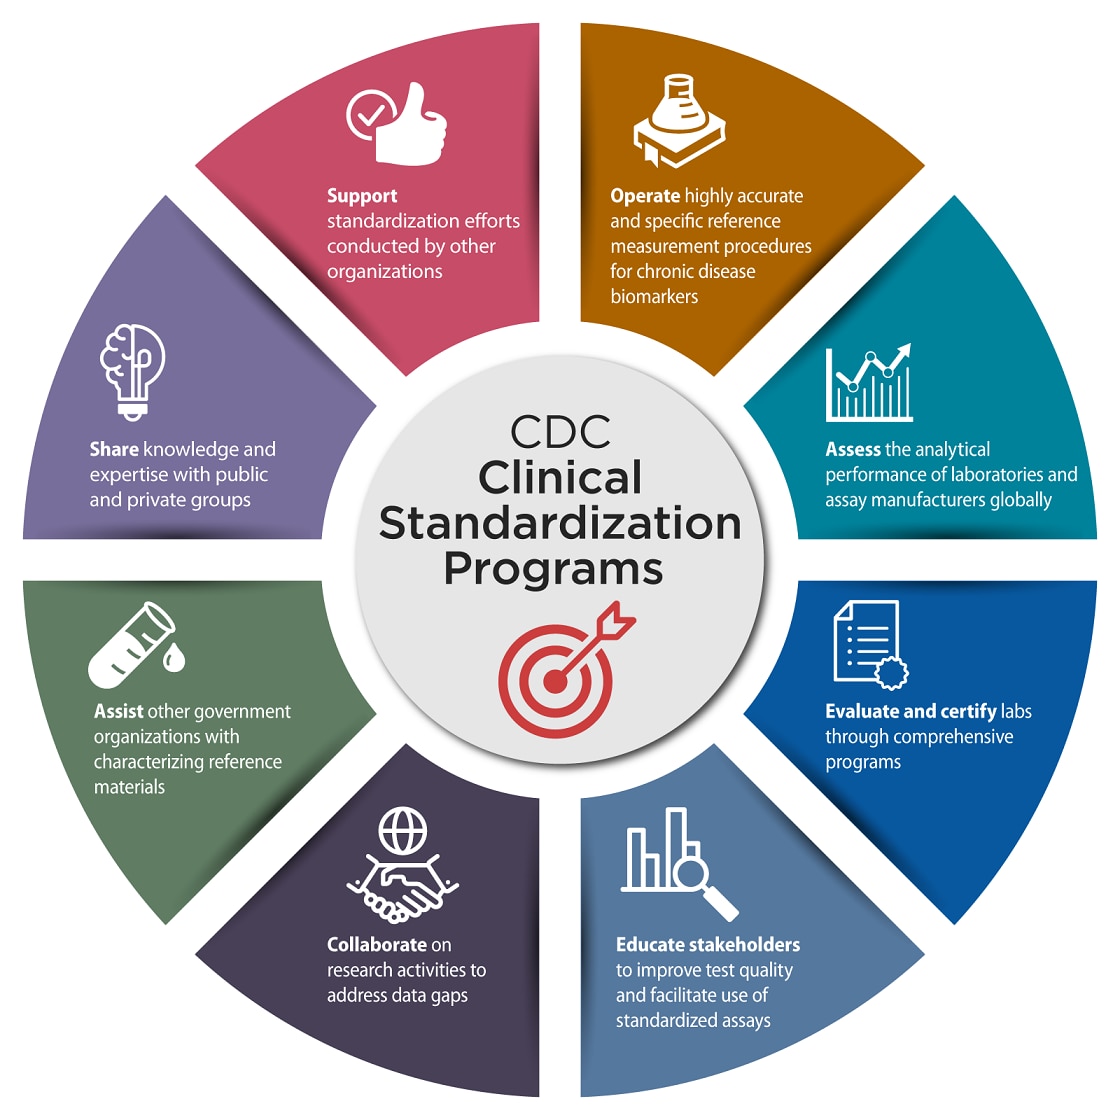 CD Clinical Standardization Programs